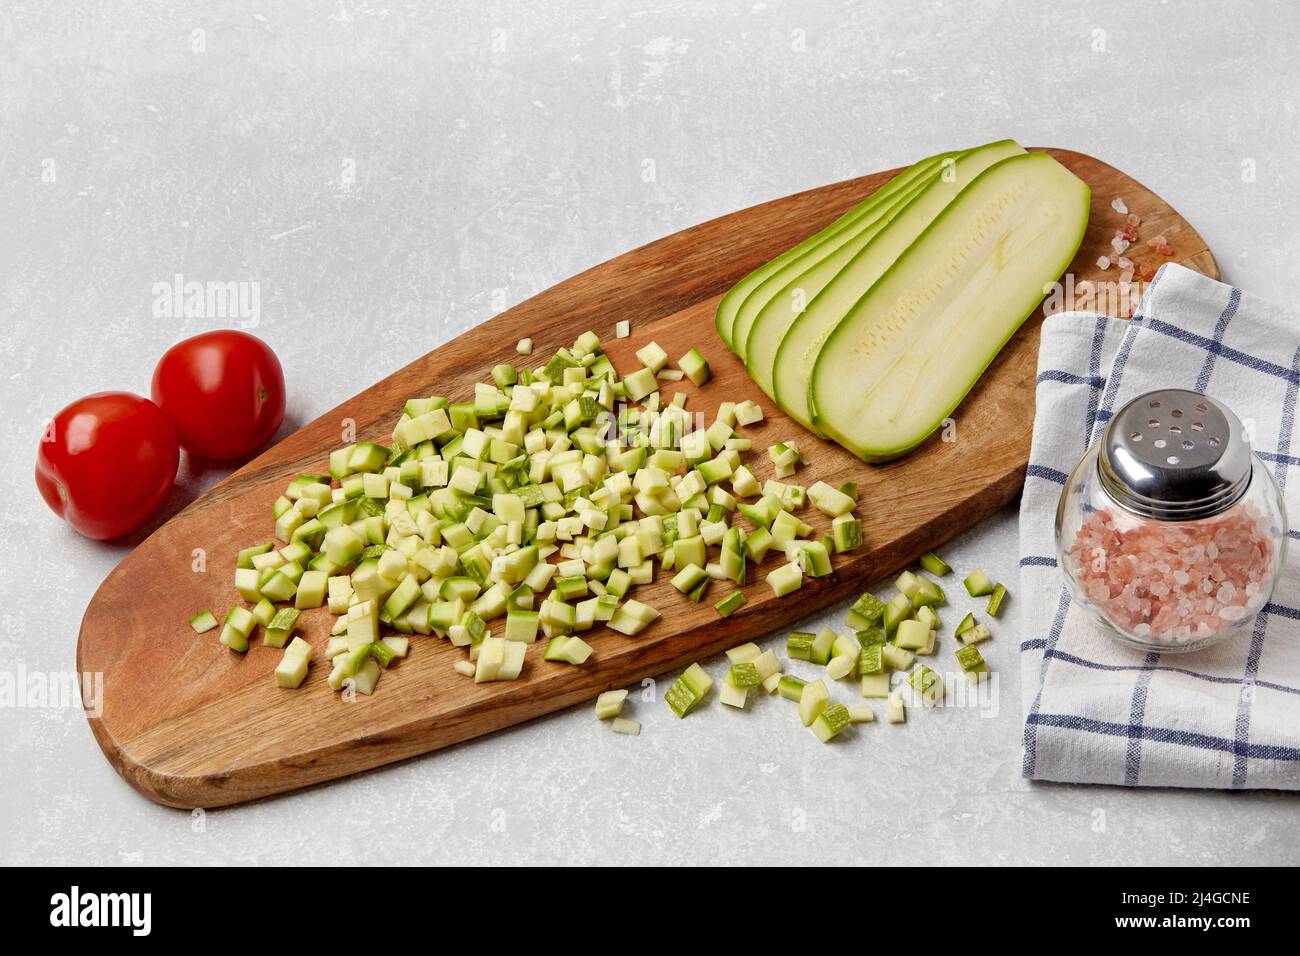 Affettato zucchine verdure zucchine su un tagliere di legno, pomodori, sale rosa e tovagliolo su un tavolo chiaro di cemento. Ingredienti per insalata di verdure Foto Stock